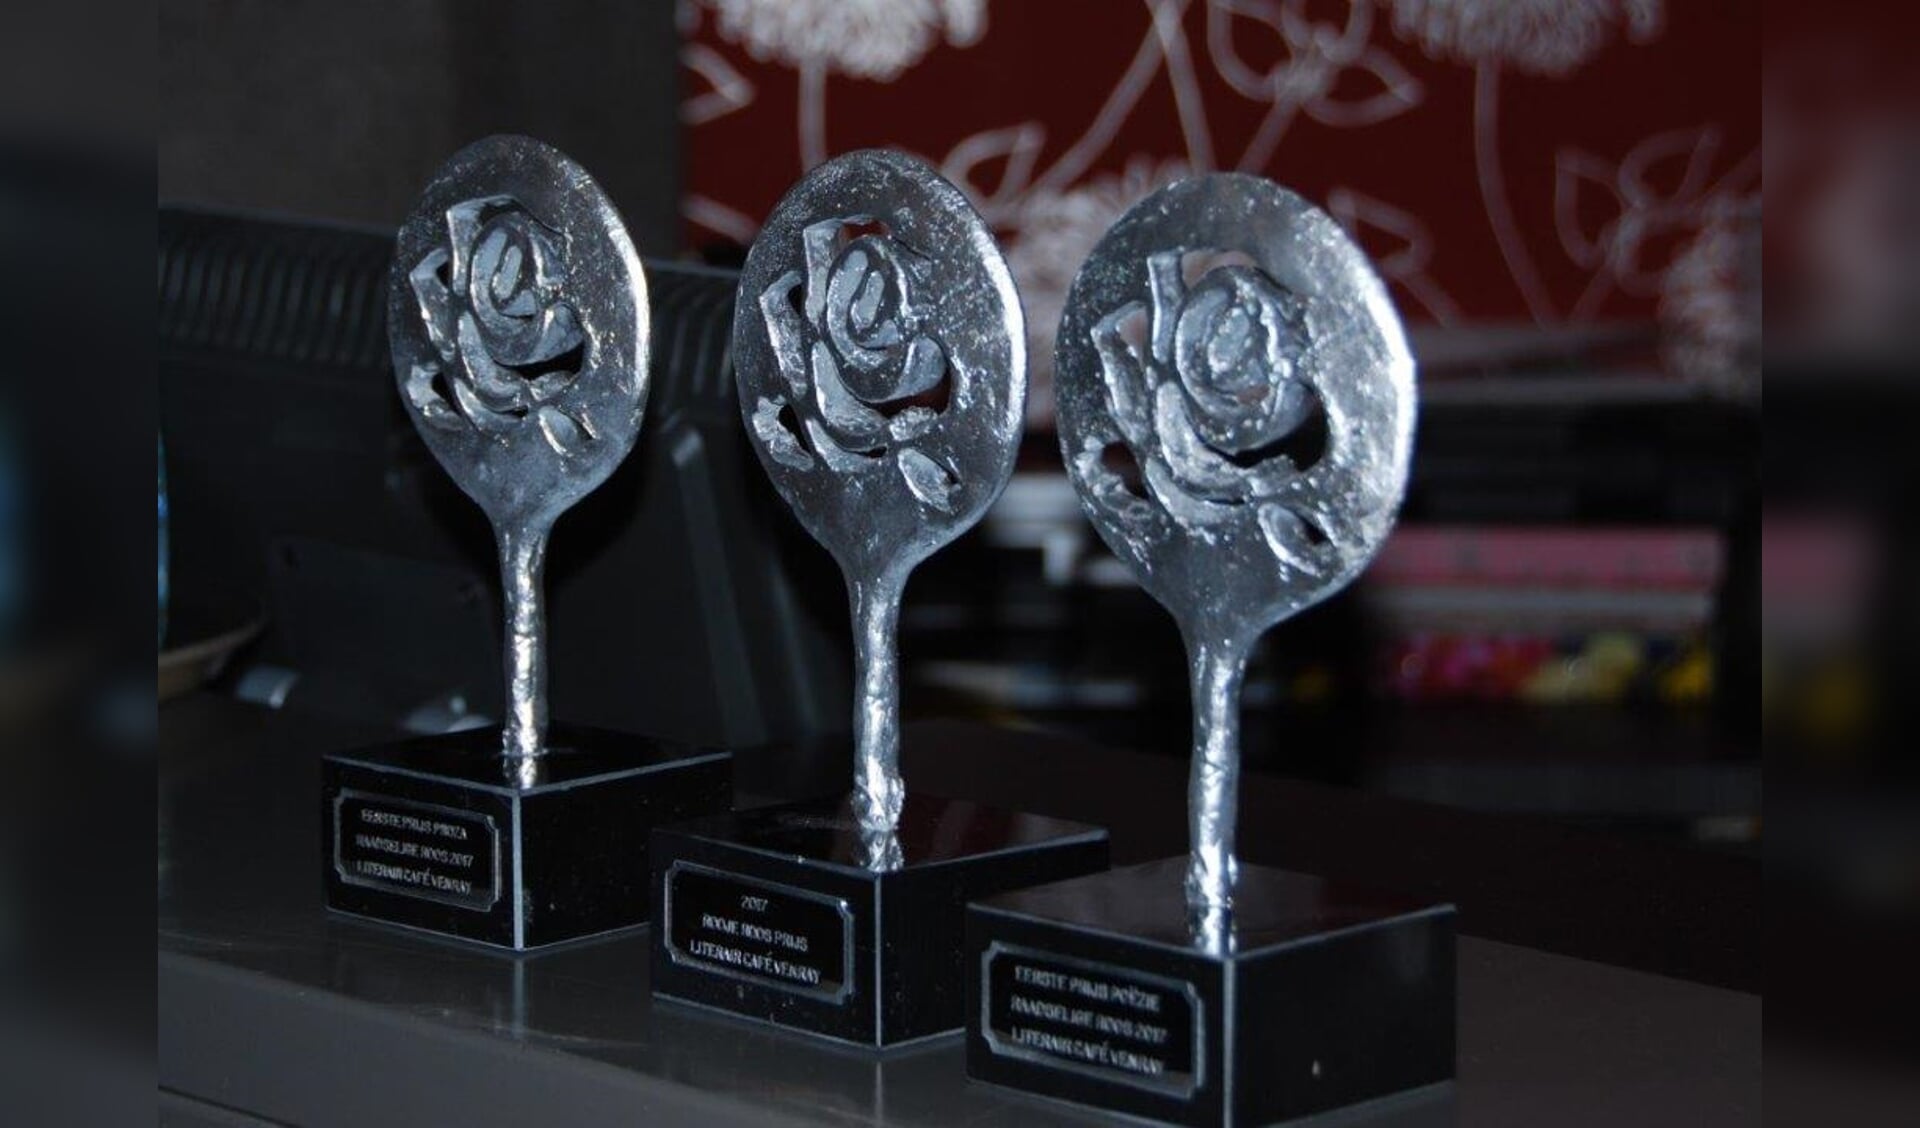  De drie trofeeën voor de eerste prijswinnaars in de categorieën proza en poëzie en de winnaar van de publieksprijs poëzie, de Roojse Roos.